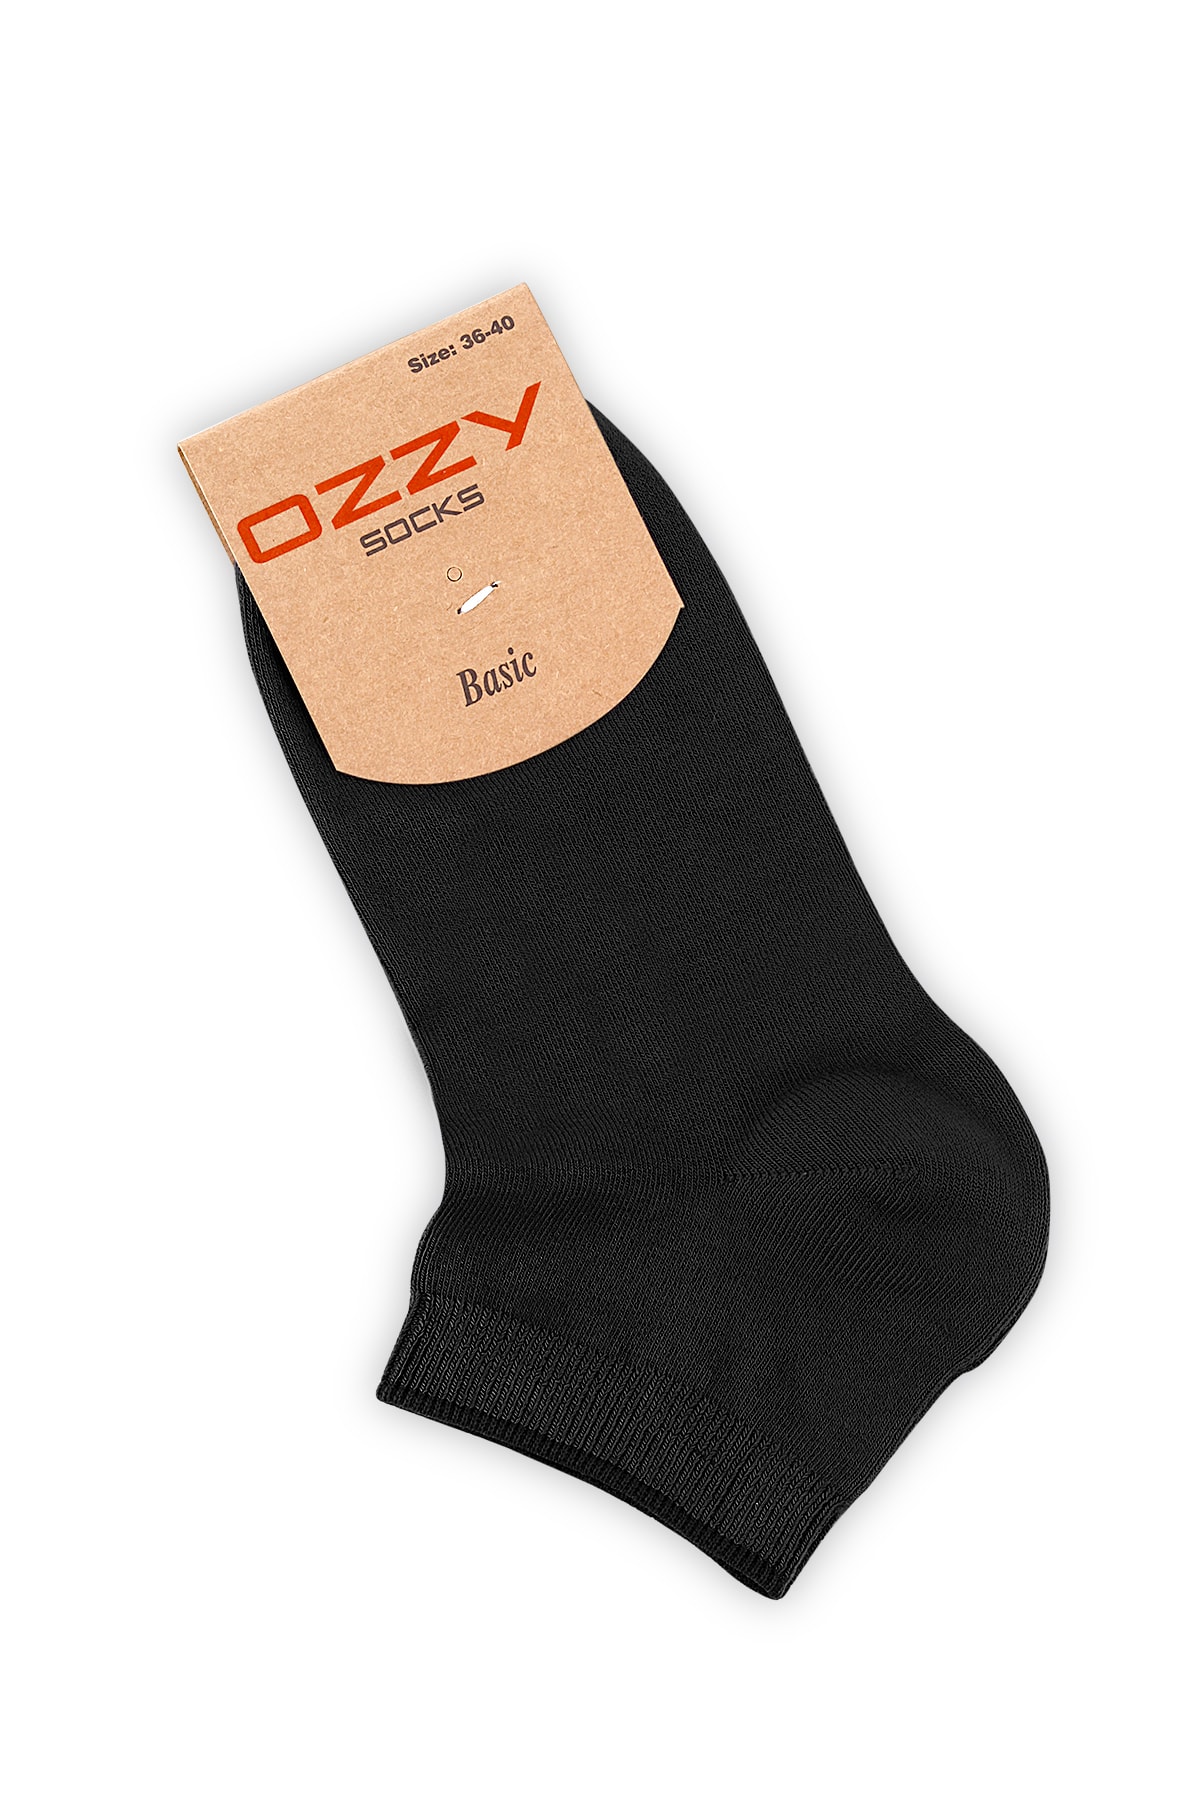 Ozzy Socks 8 Çift Bambu Kadın Dikişsiz Patik Çorap 4 Mevsim Dayanıklı Topuk Ve Burun NC11958